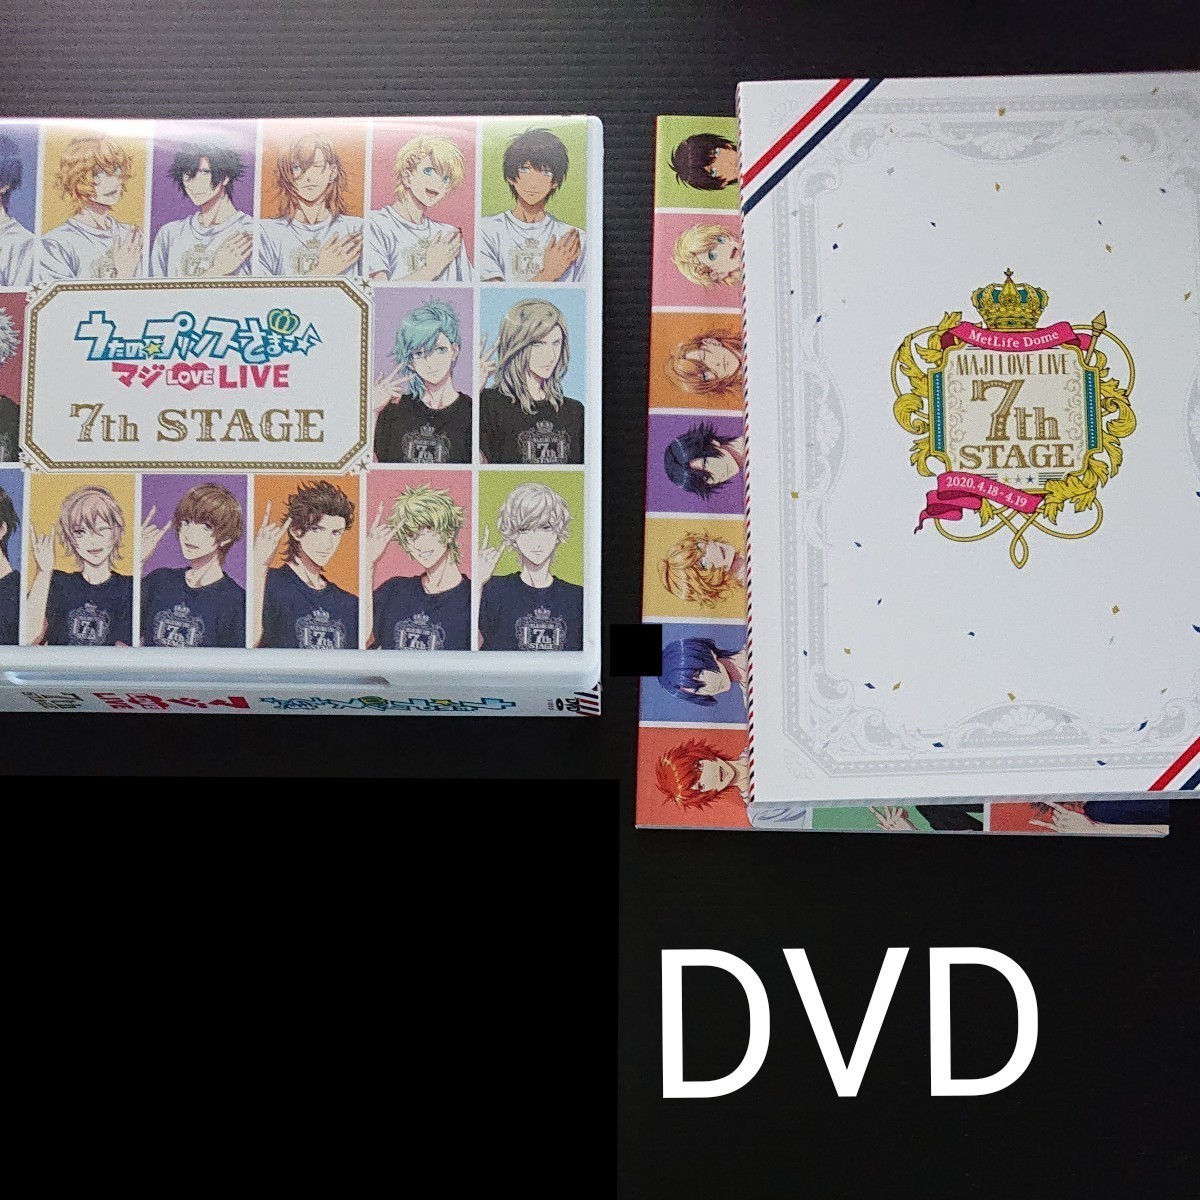 品質一番の うたプリ DVD 7th マジLOVELIVE アニメ